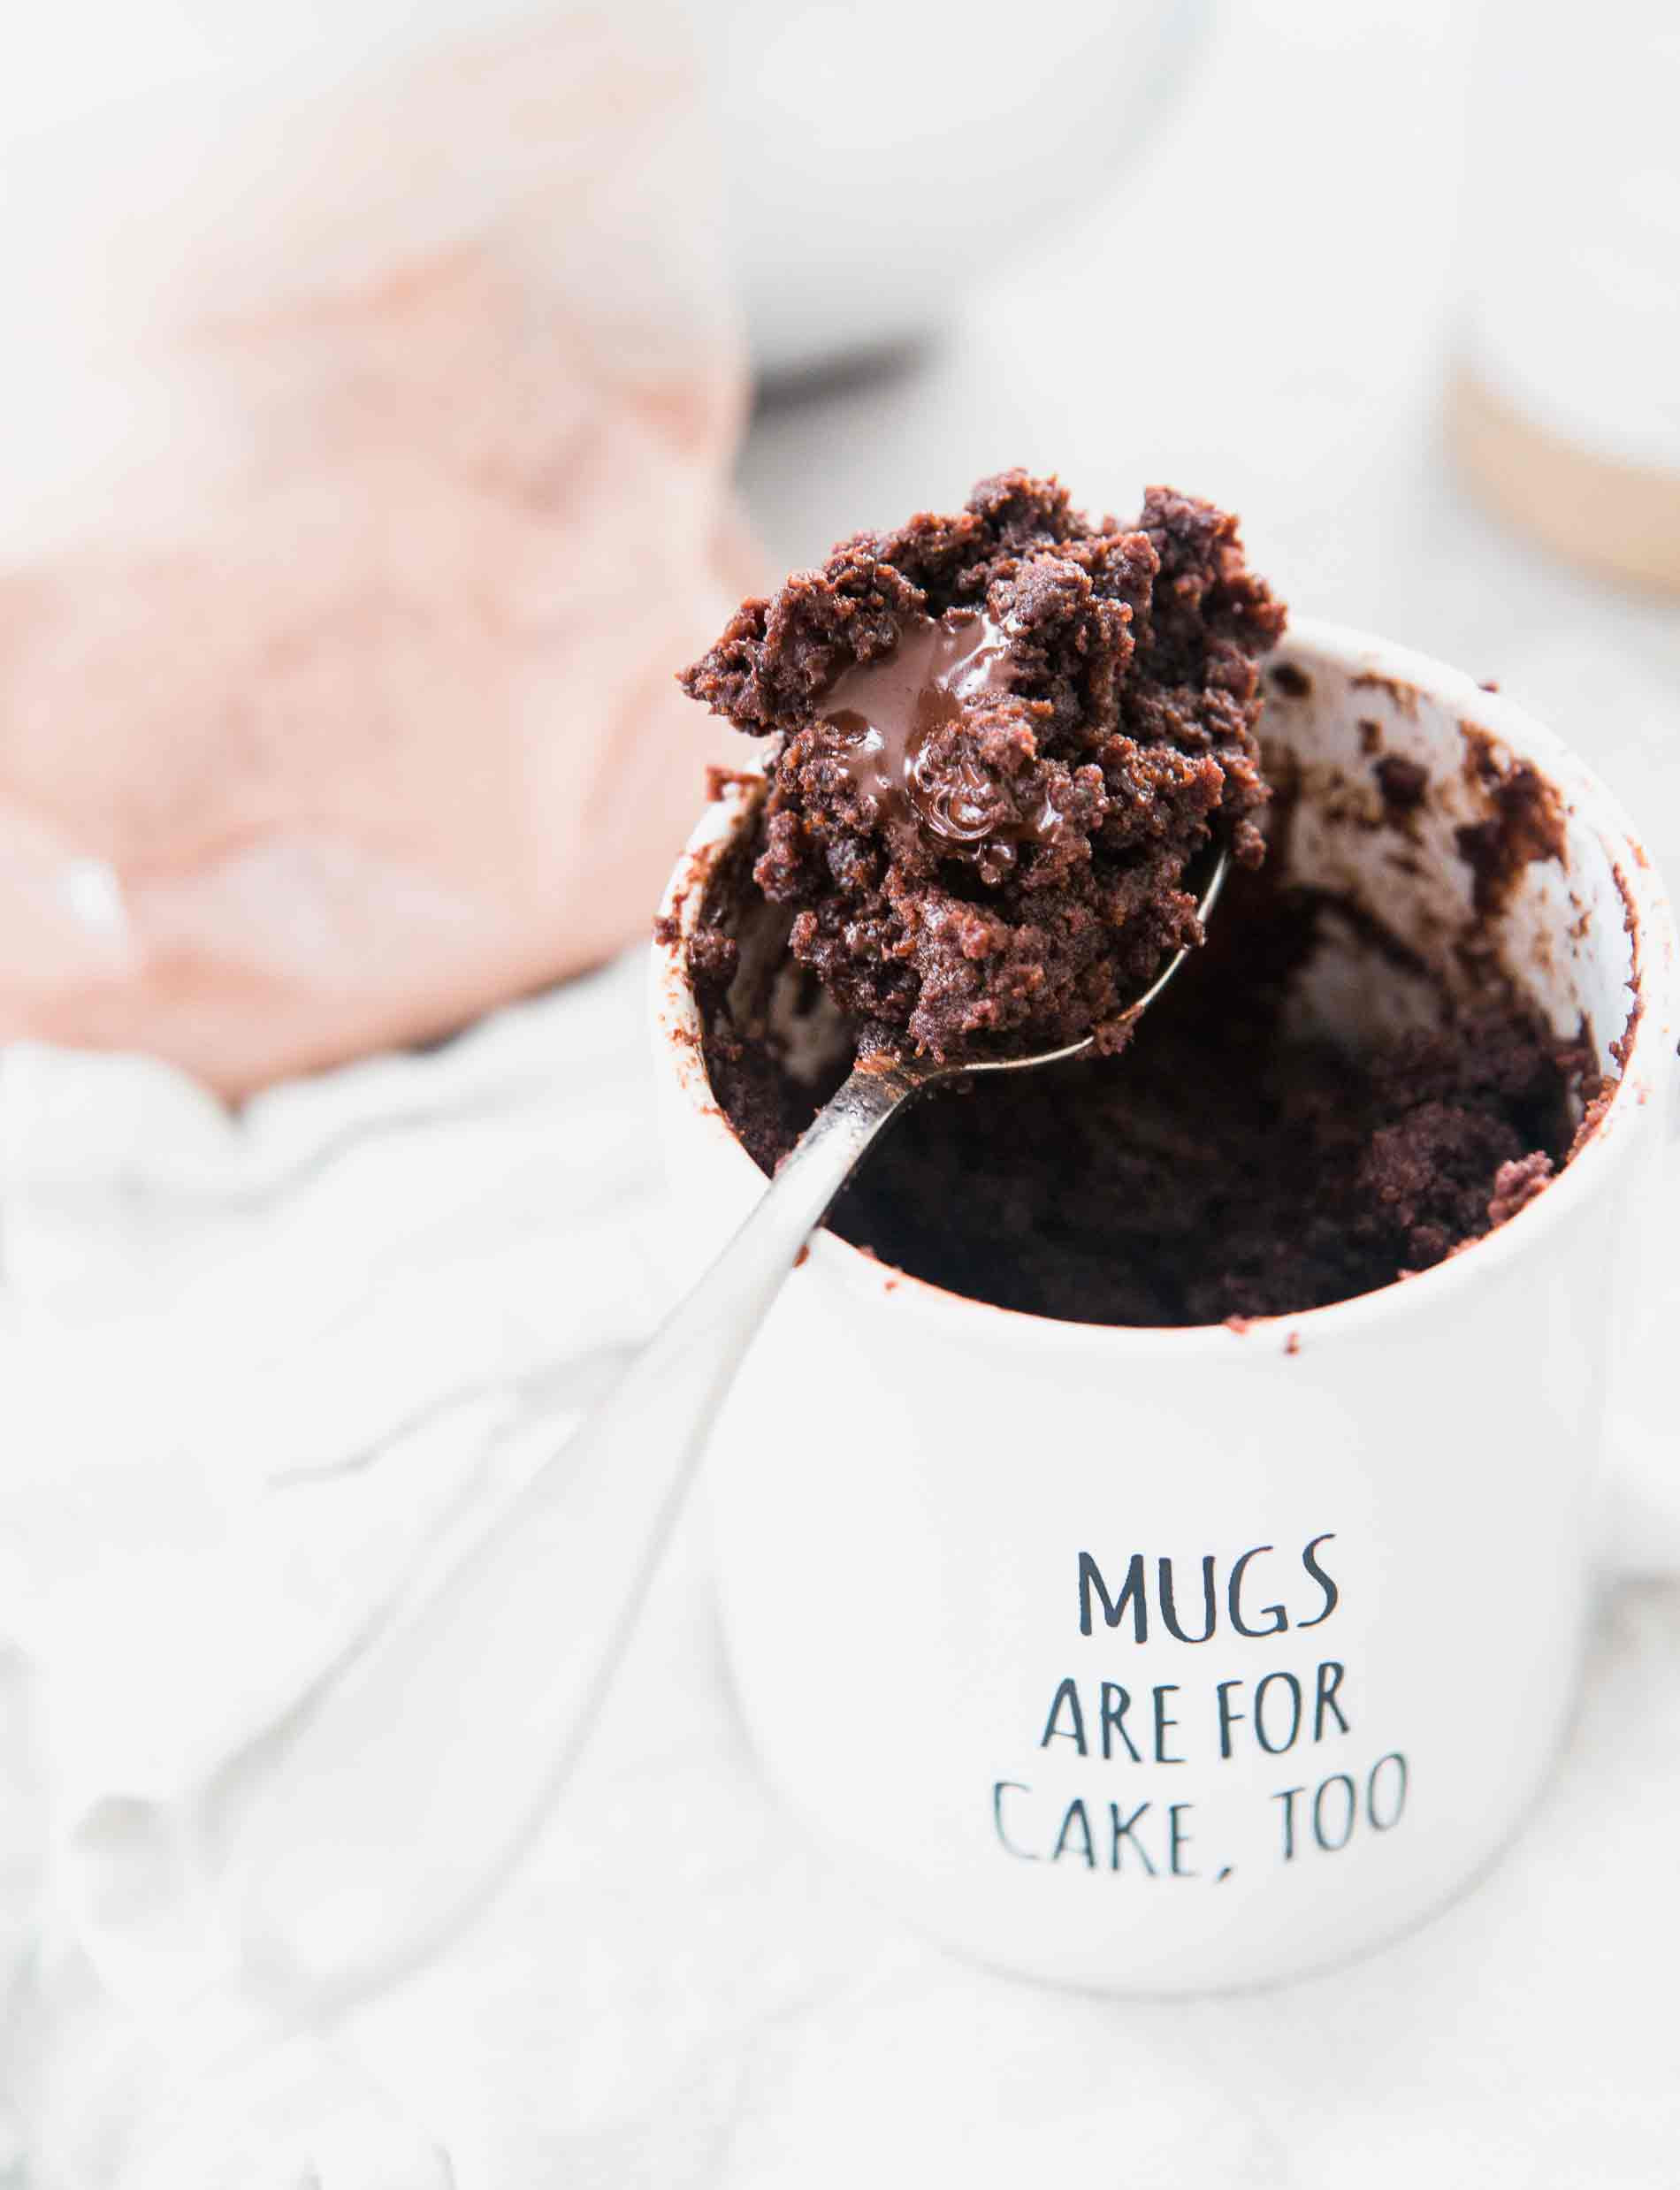 Mug Cake With Cake Mix And No Egg
 The Moistest Chocolate Mug Cake Mug Cake For e or Two